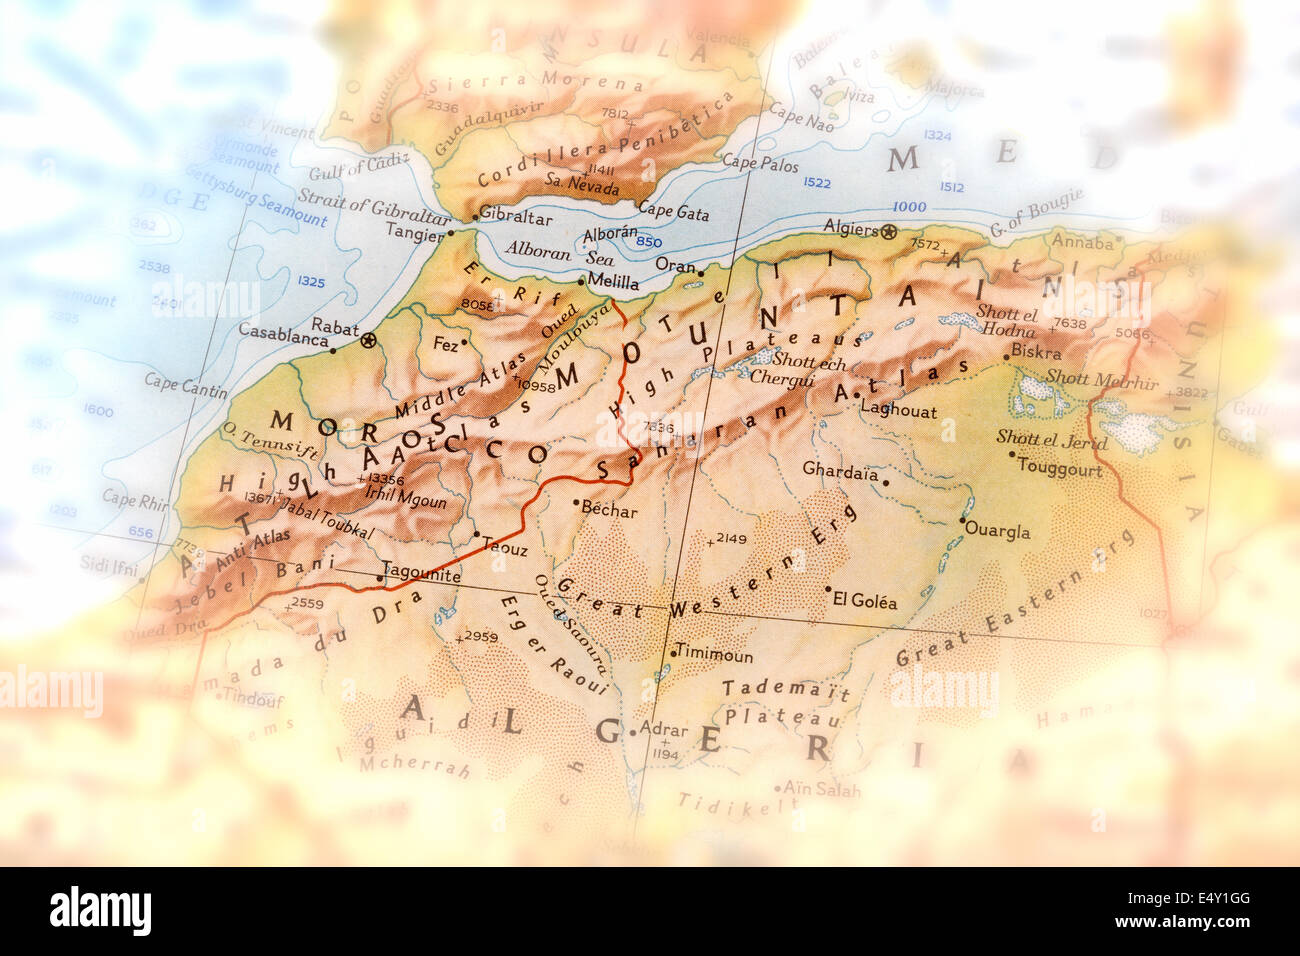 Traveler est concentré sur les montagnes de l'atlas - préparation pour le voyage Banque D'Images